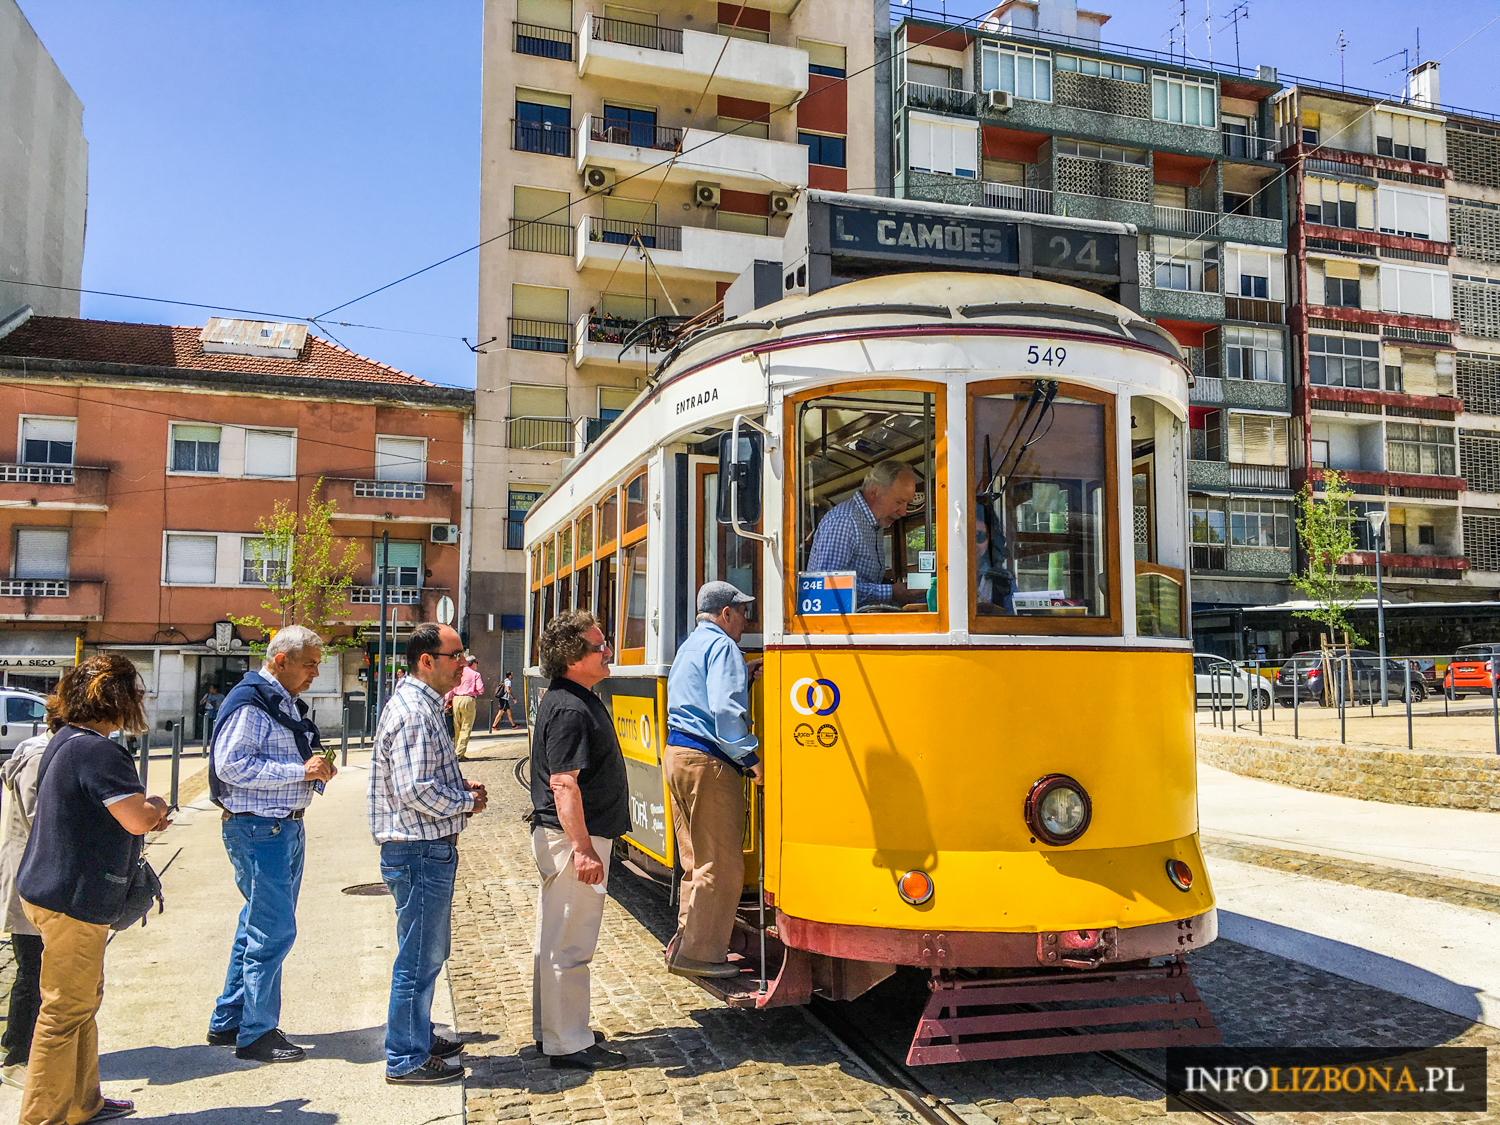 Lizbona 2020 ceny za komunikację miejską w Lizbonie Komunikacja miejska bilety transport publiczny tramwaje autobusy metro windy Cena za bilet opis przewodnik ile kosztuje bilet na tramwaj informacje praktyczne